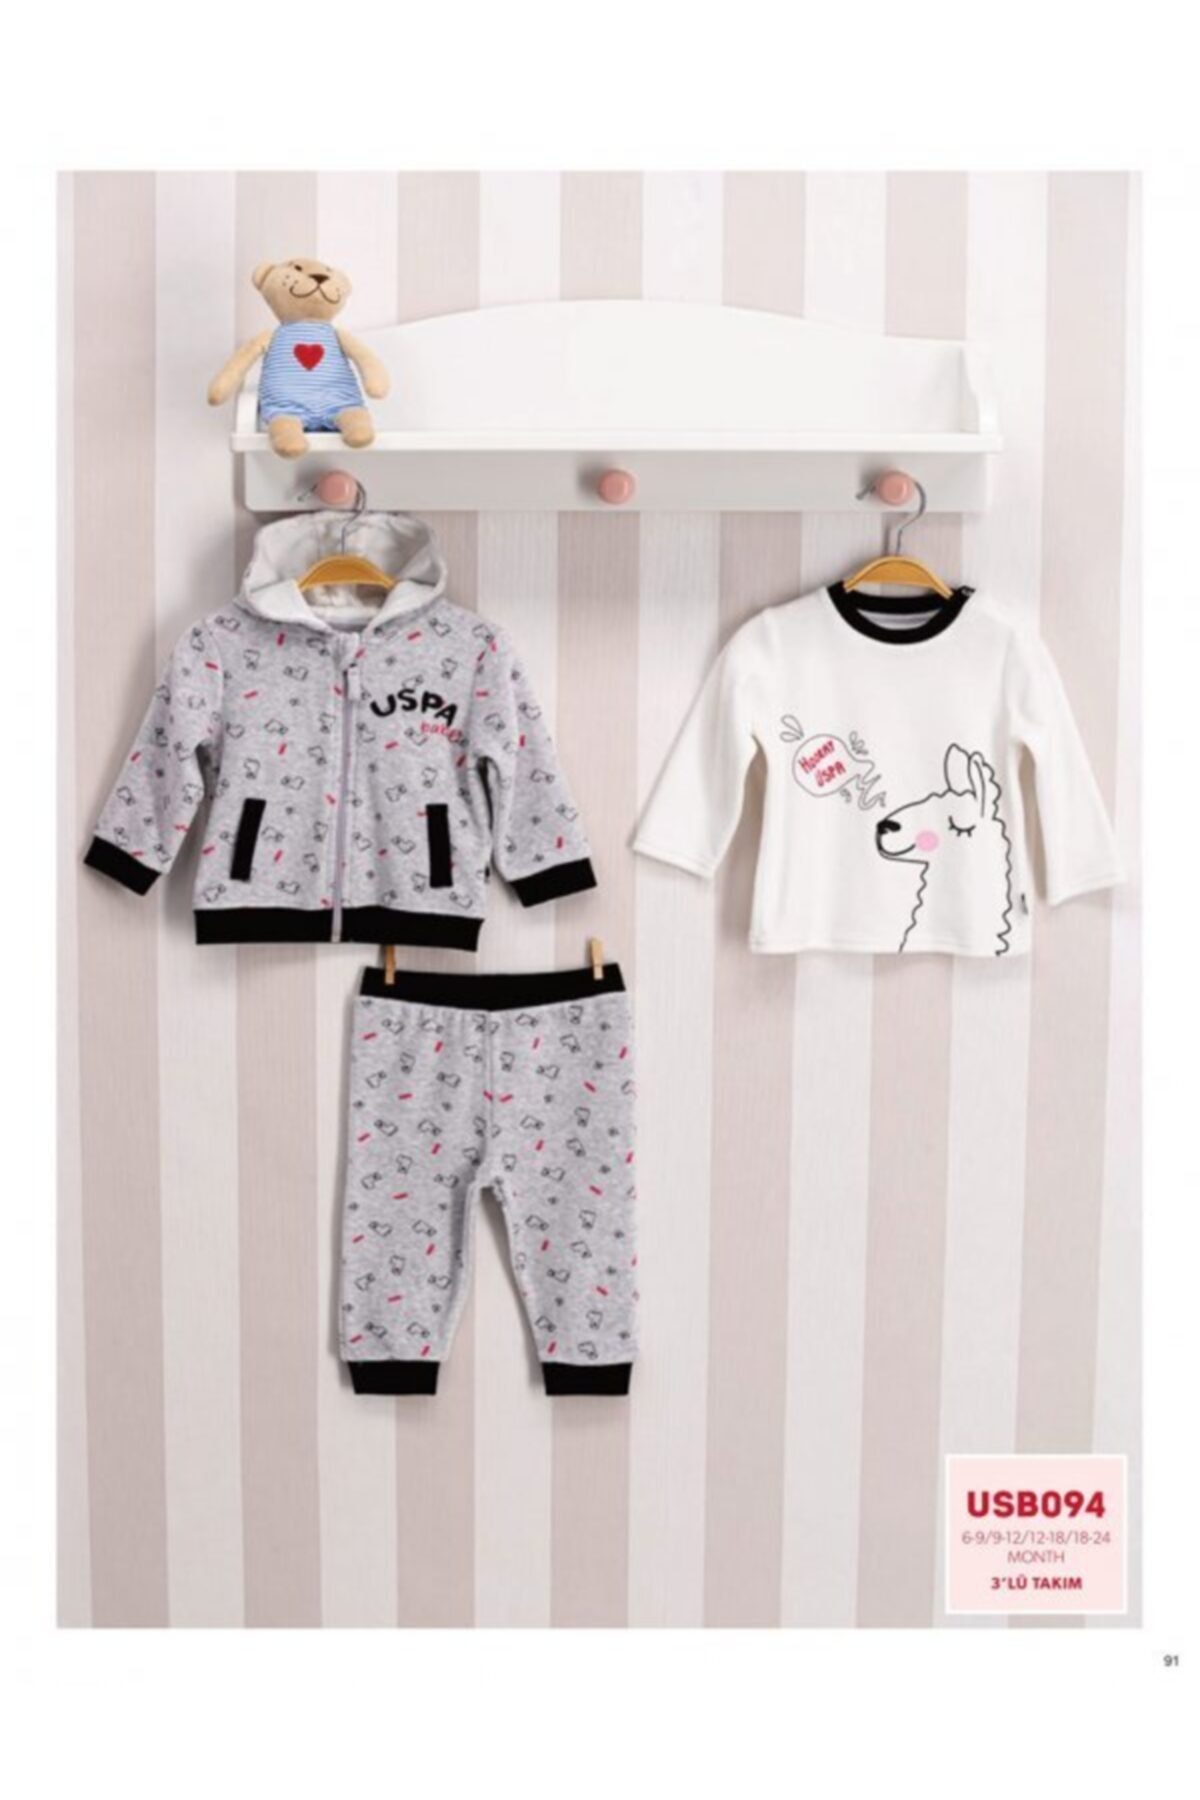 خرید اینترنتی ست لباس راحتی نوزادی دخترانه سفید برند us polo assn USPOLO607 